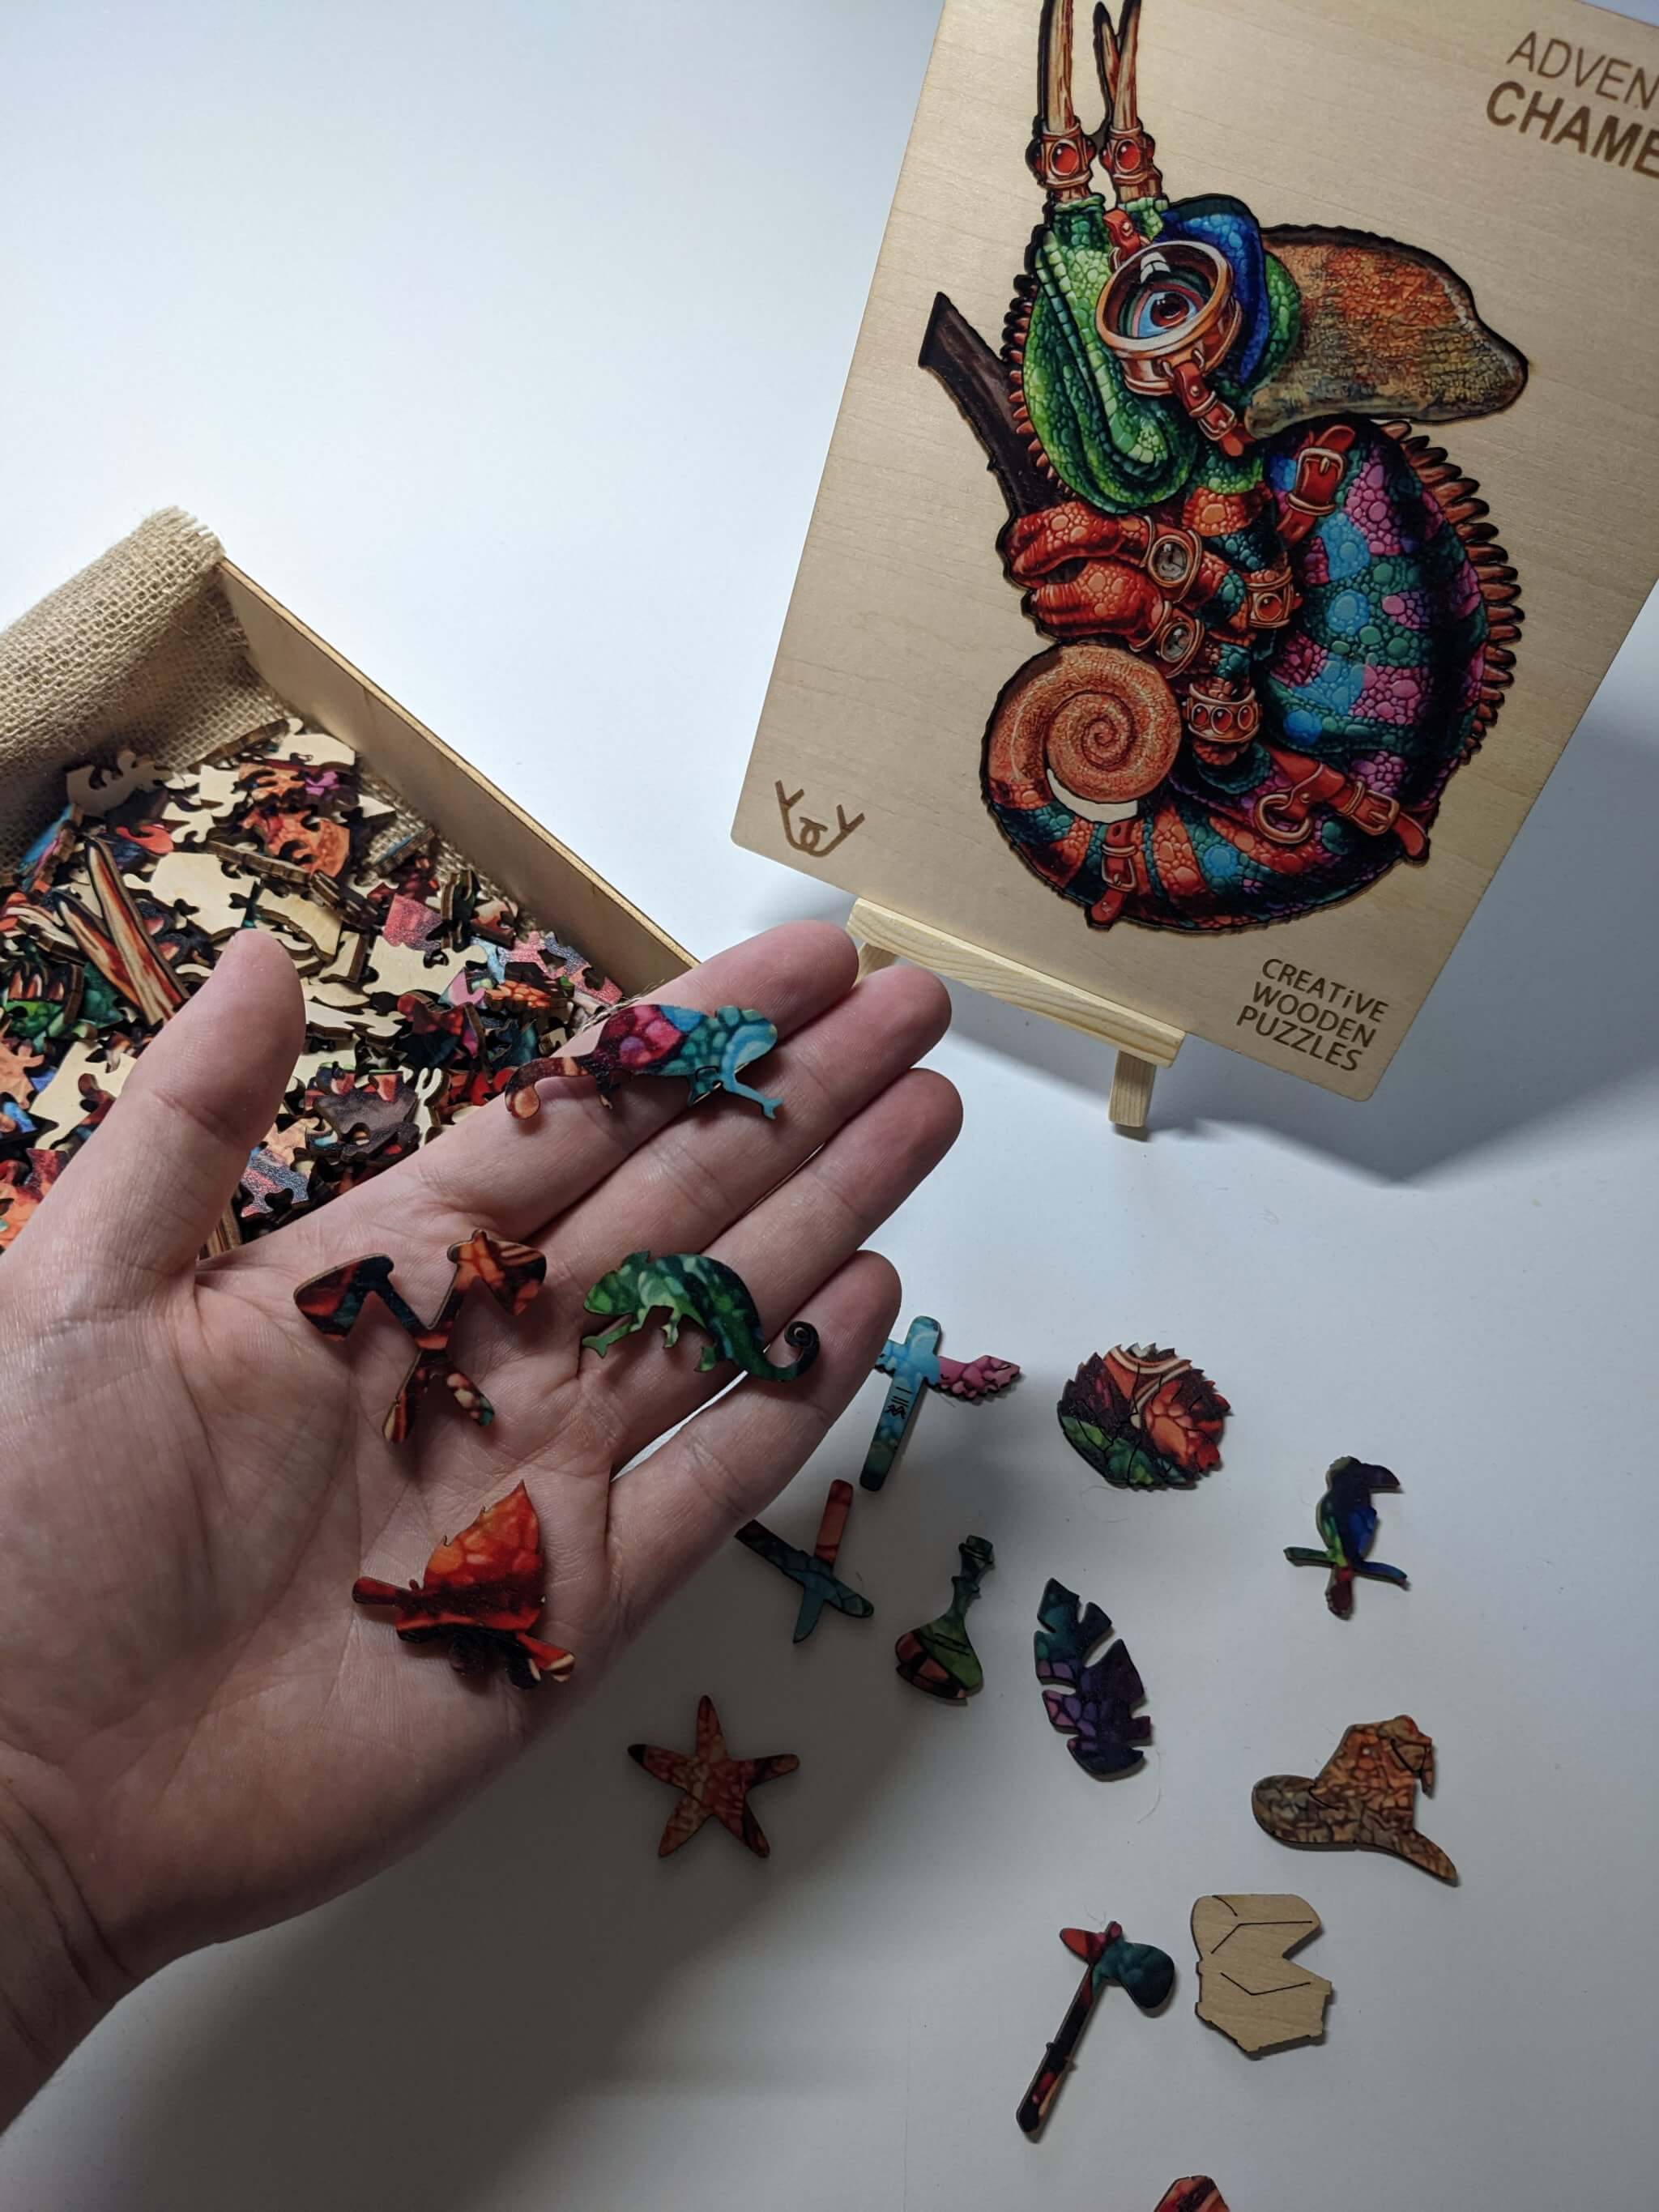 Dřevěné puzzle – Adventurous Chameleon